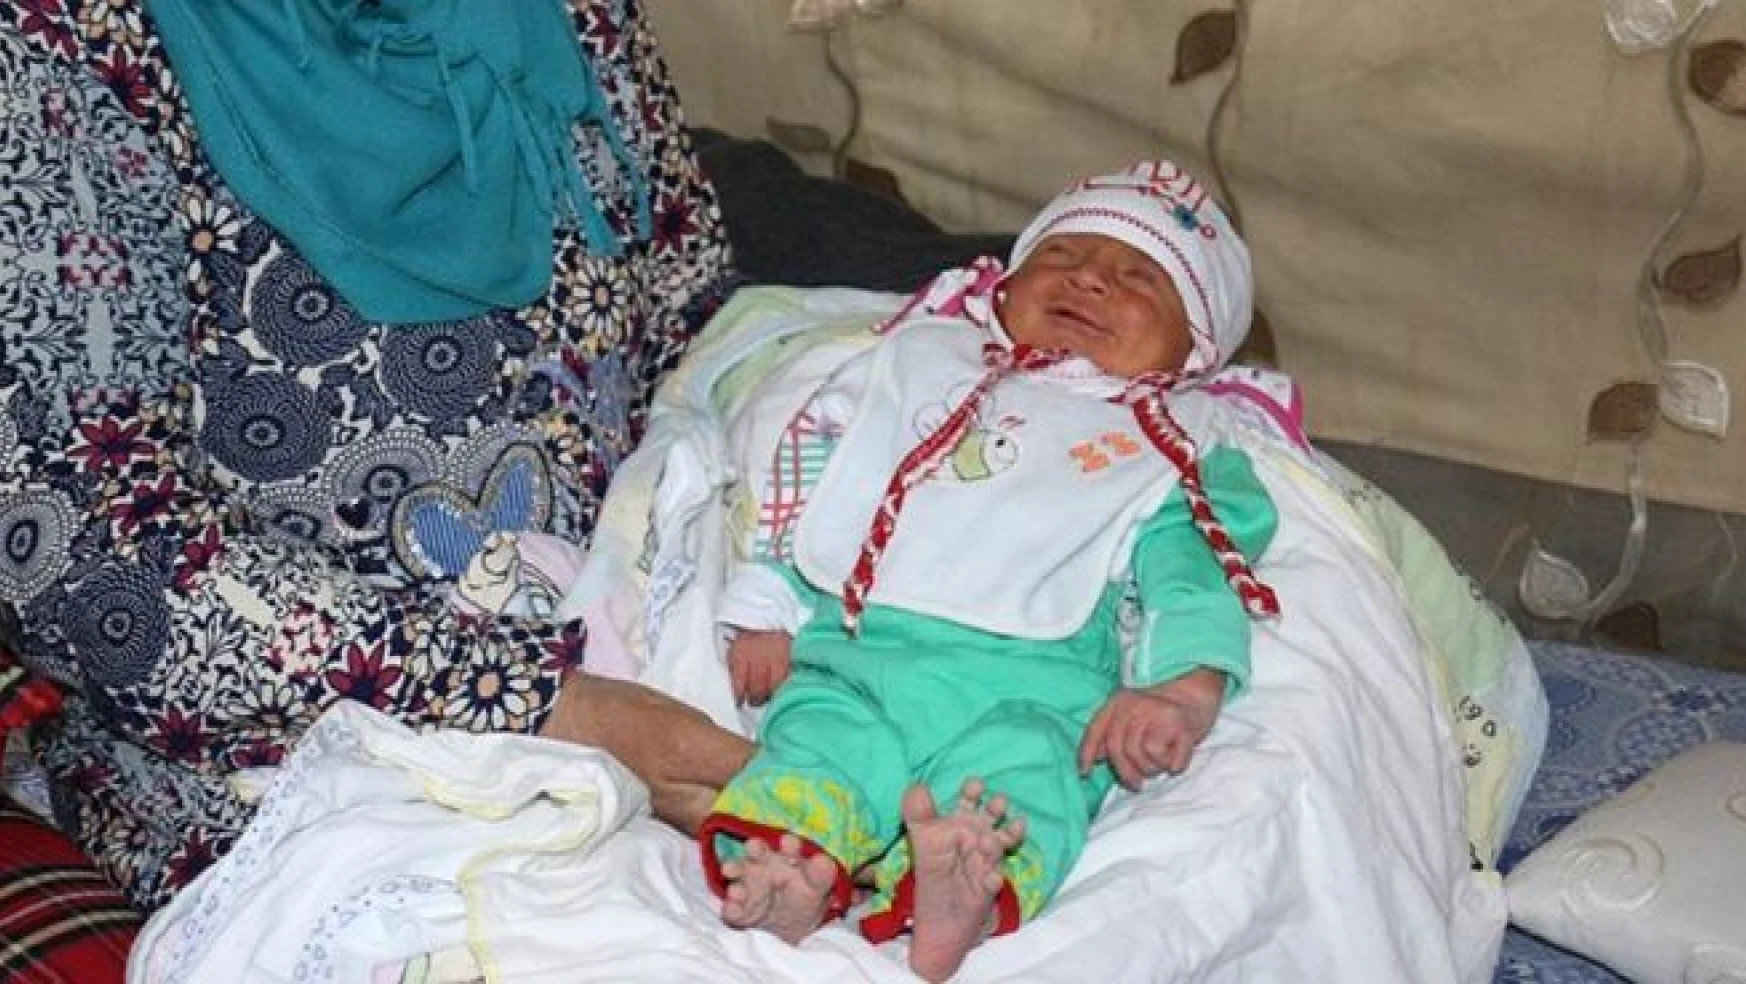 Suriyeli bebek པ parmaklı' doğdu